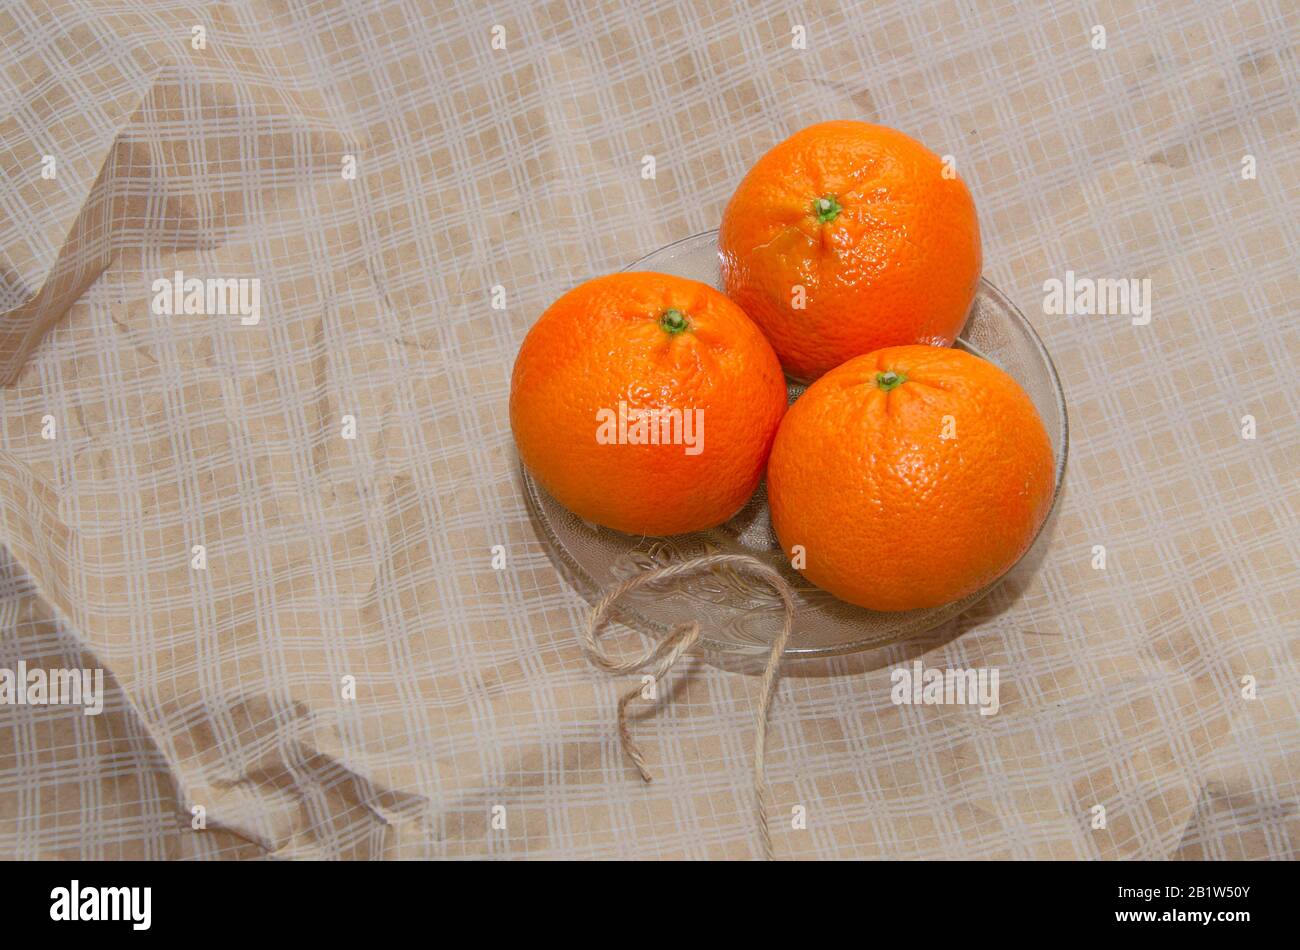 Ripe orange fresh mandarin, mandarin slices, isolated on white background Stock Photo